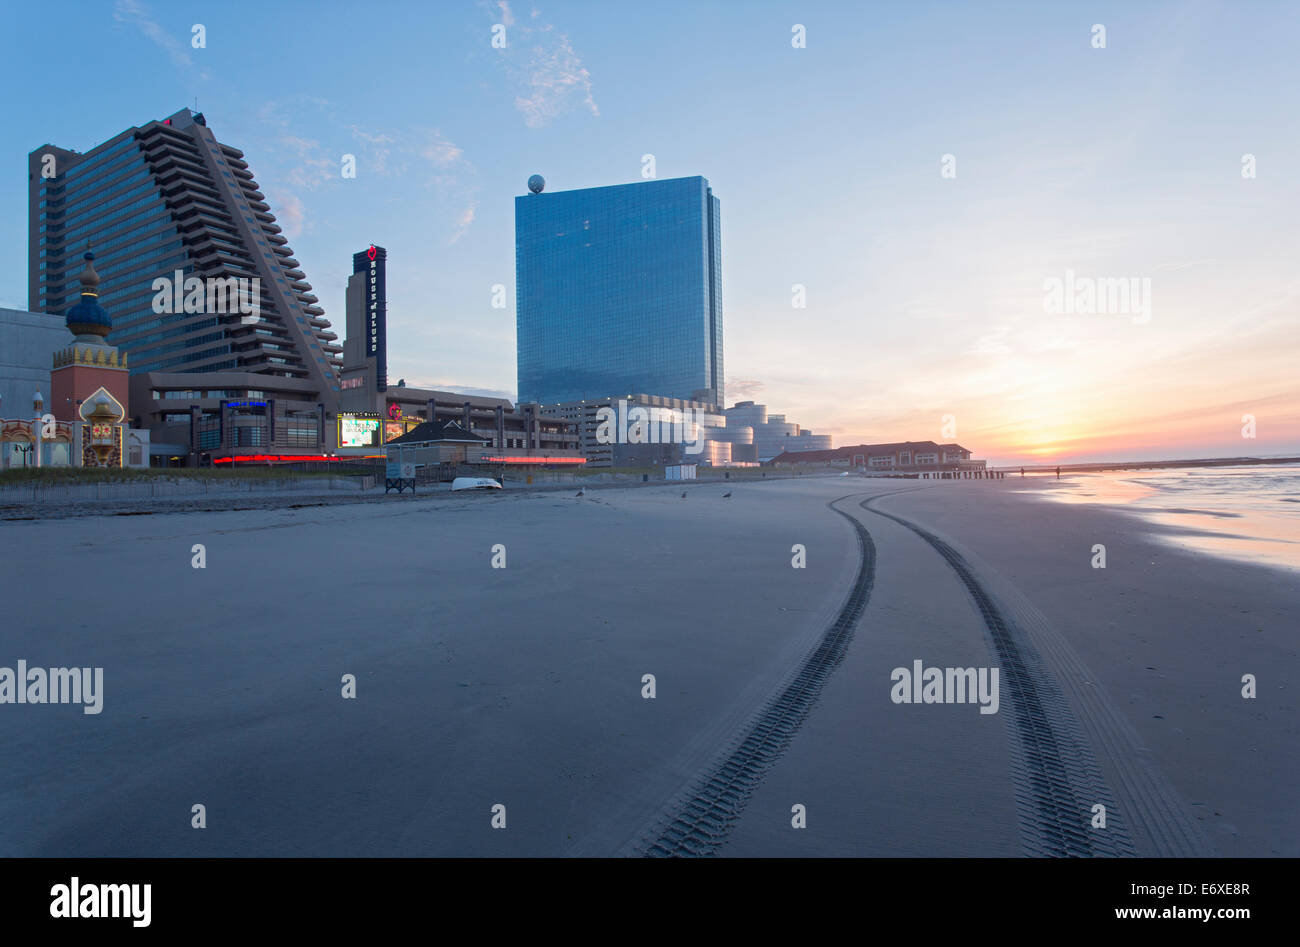 USA,New Jersey, Atlantic City, Atlantic City vue de la plage au lever du soleil Banque D'Images